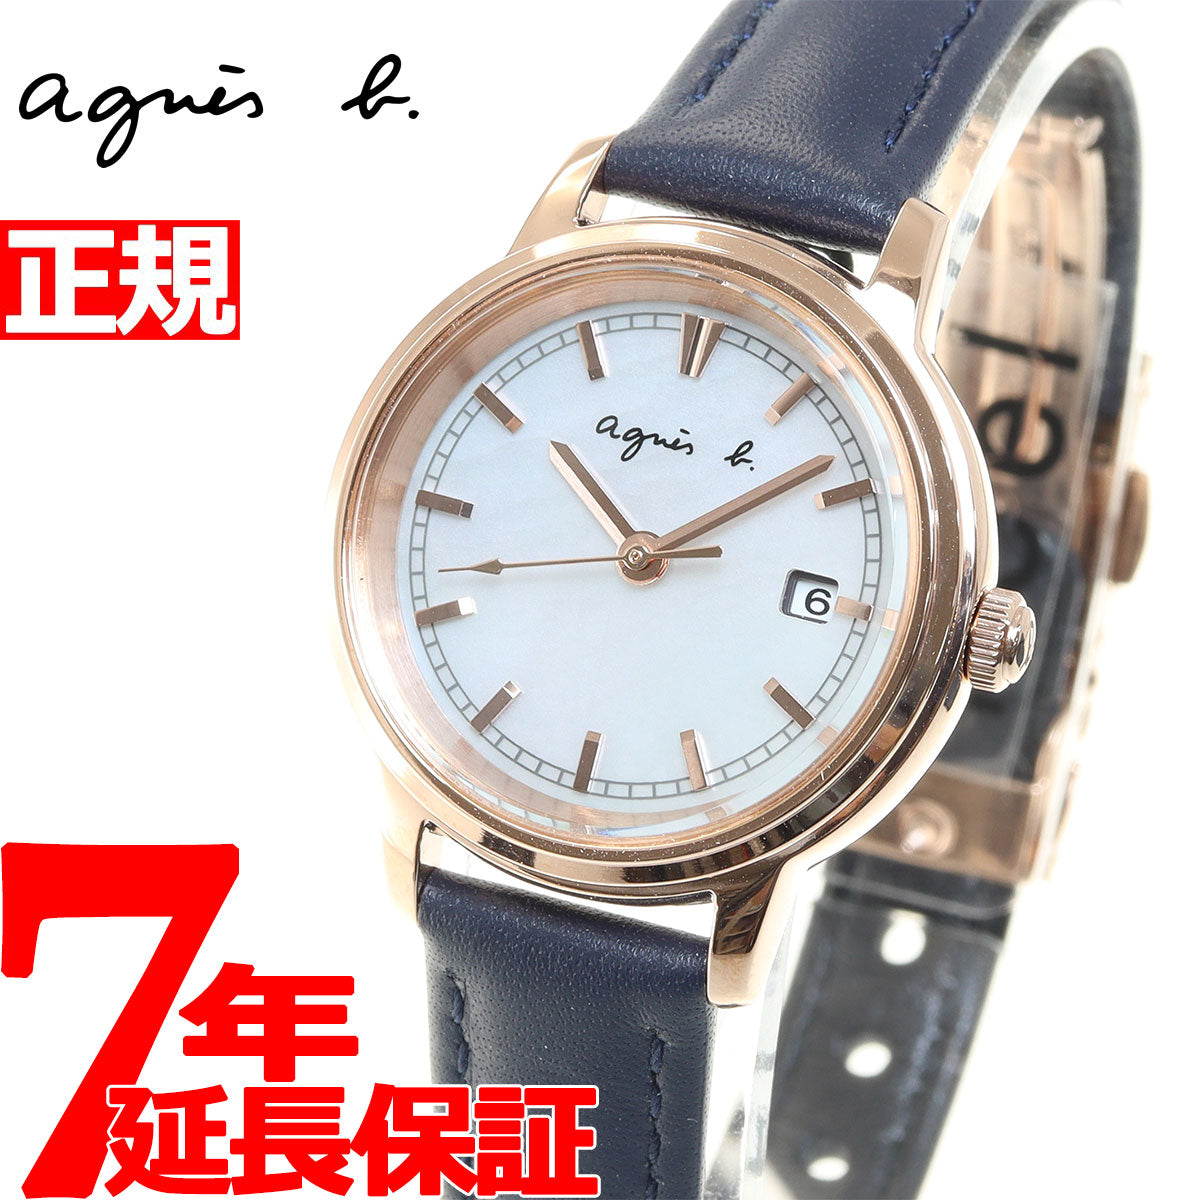 アニエスベー 時計 ソーラー レディース 腕時計 FCSD999 agnes b. ホワイト/ネイビー